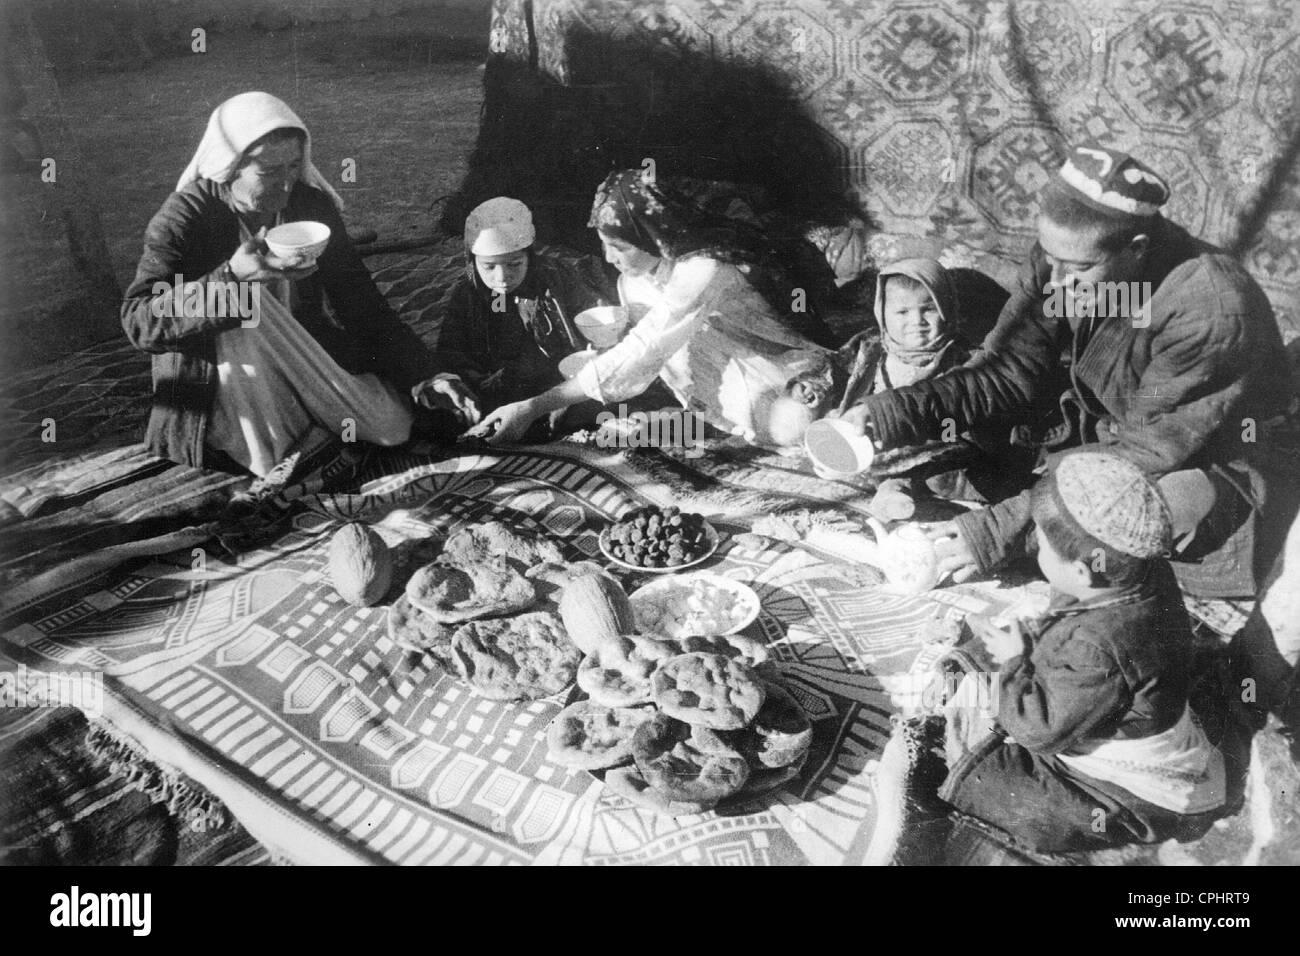 Famiglia tagiko, 1941 Foto Stock